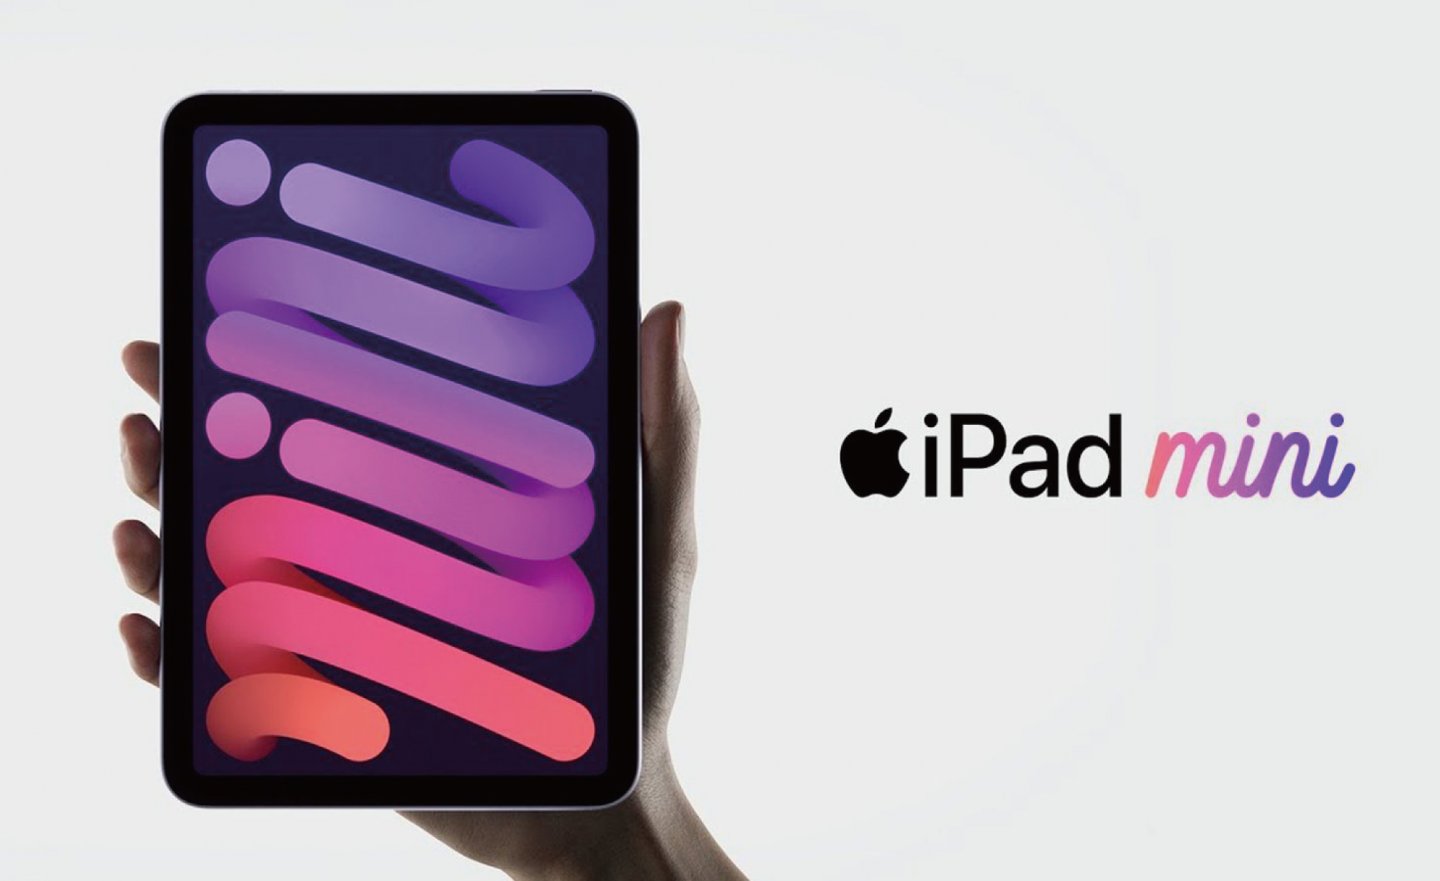 更新 iPadOS 15.5 後 iPad mini 6 會停止充電？外媒稱 Apple 蘋果已經在調查了